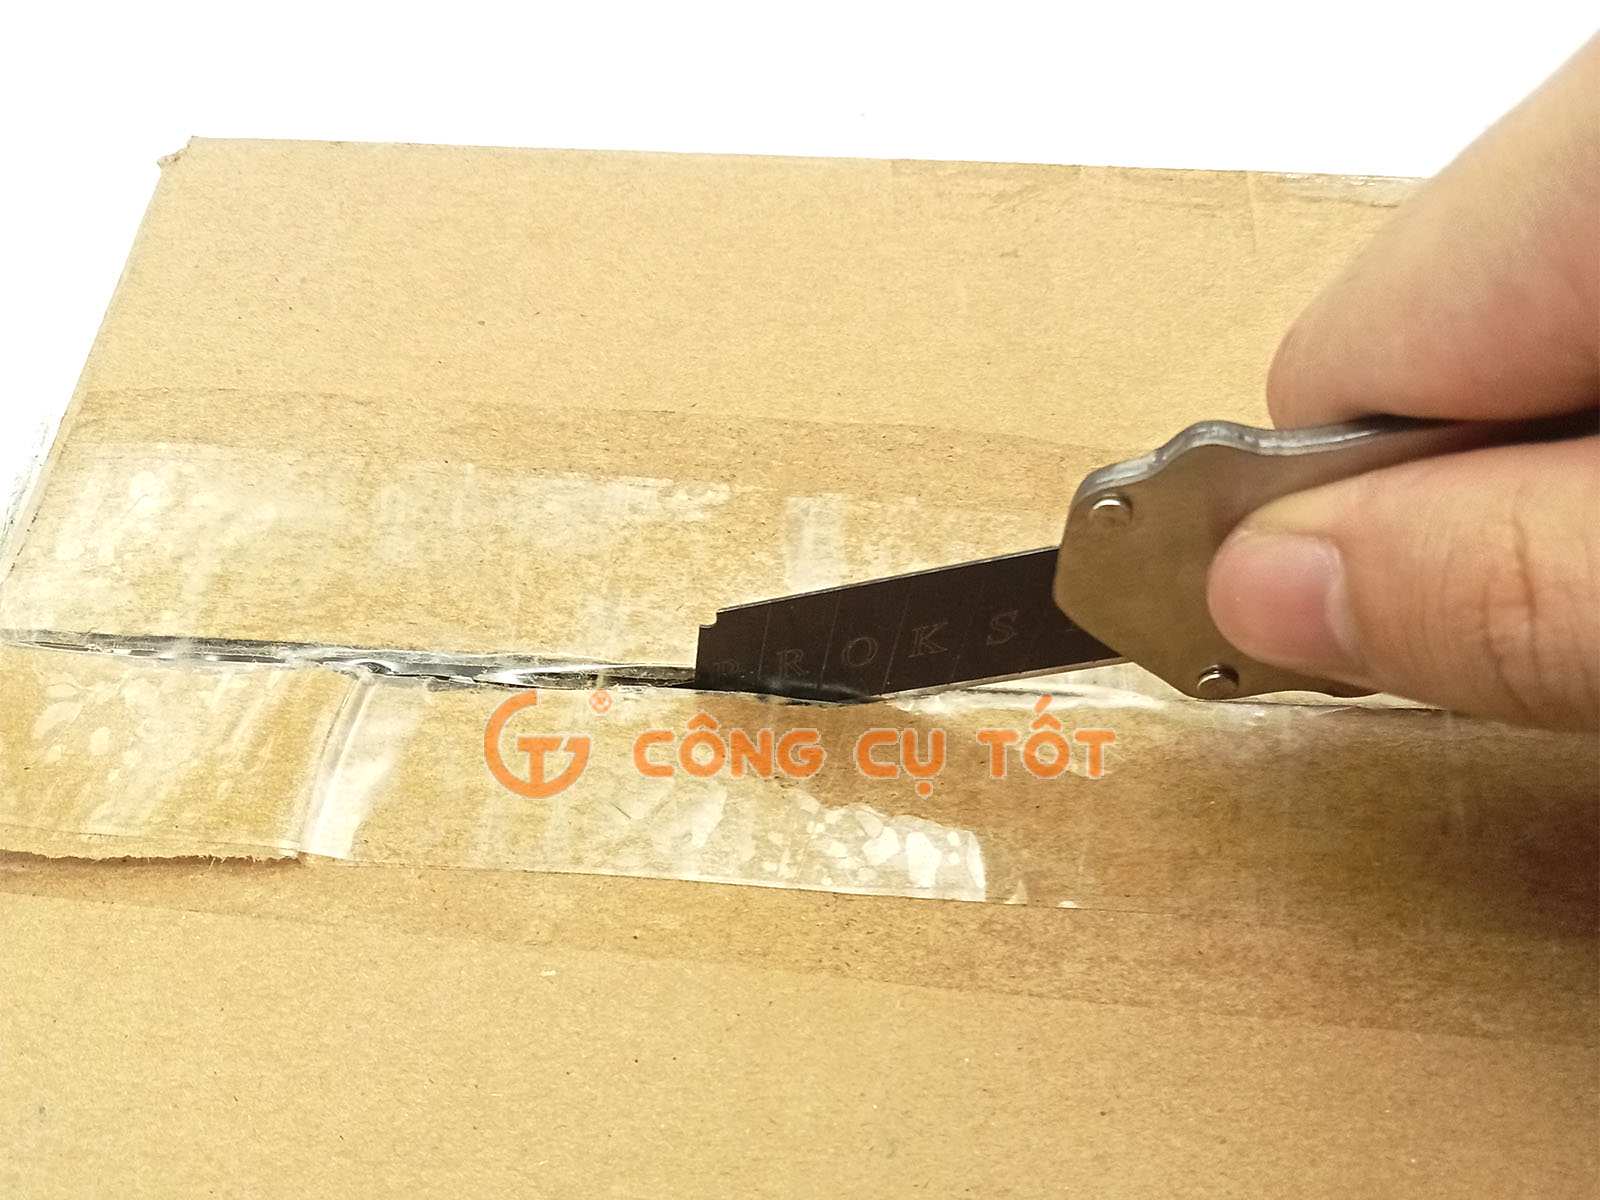 Dao rọc giấy dùng để cắt băng dính